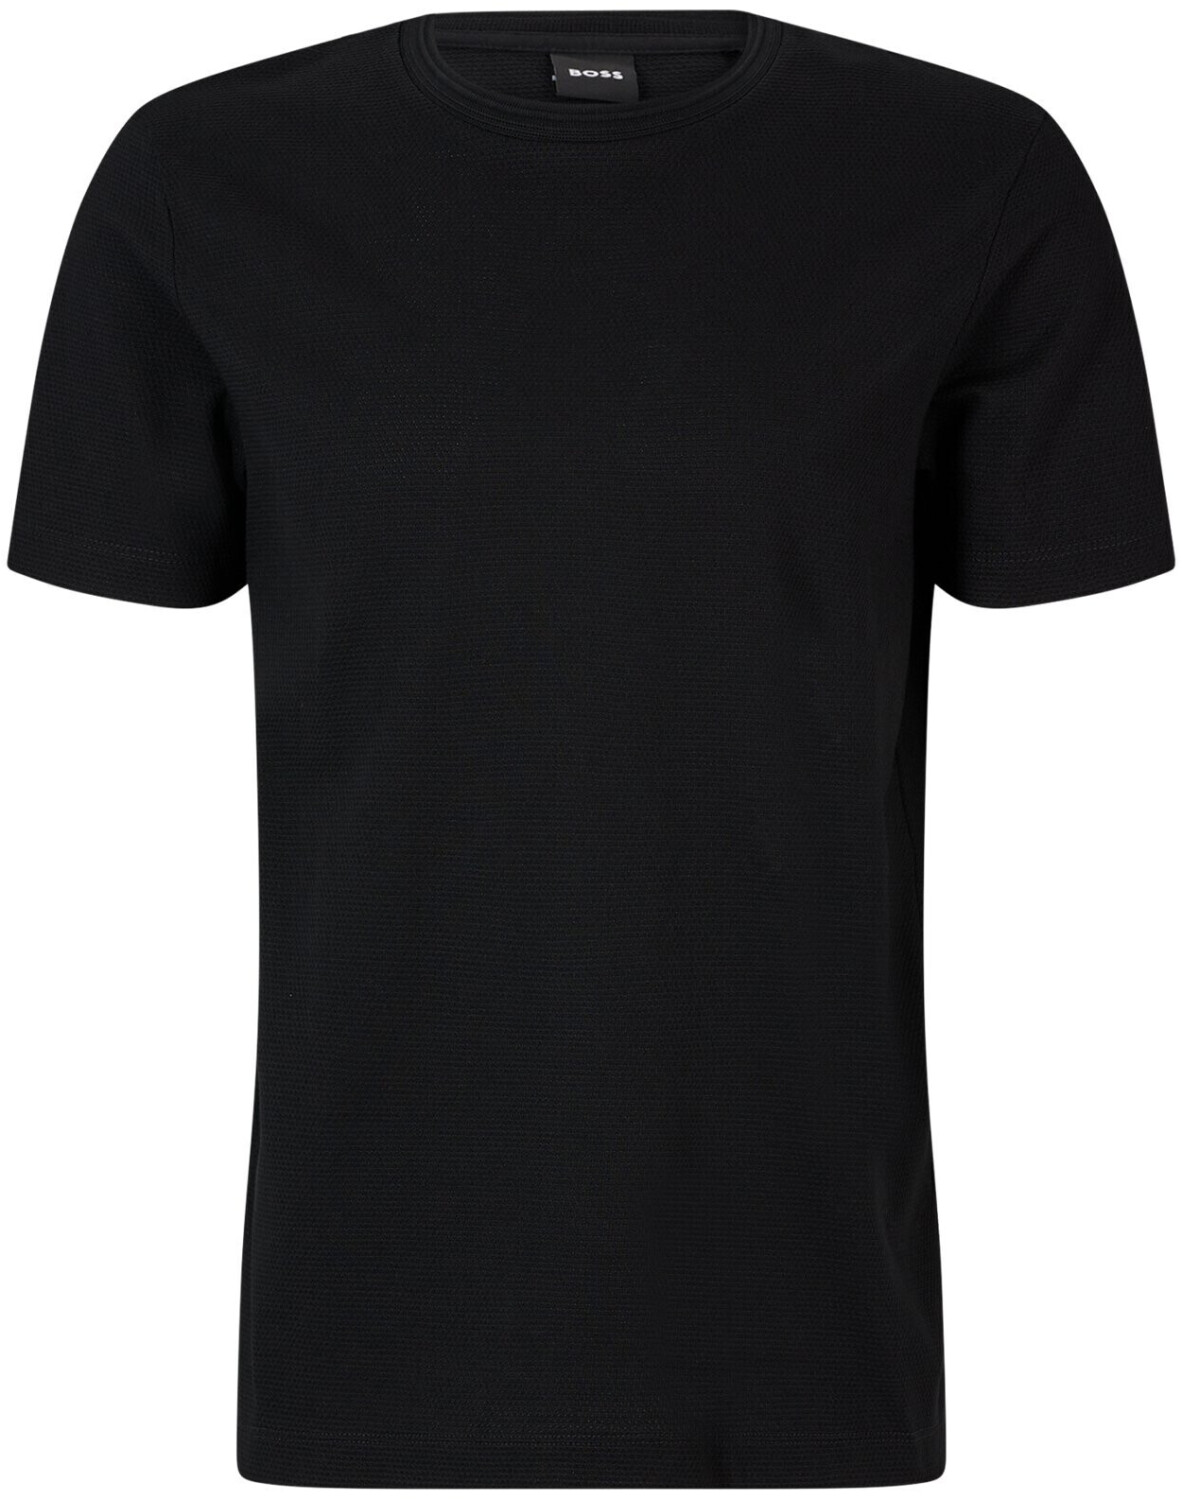 Buy Hugo Boss Tiburt 240 T-Shirt black (50452680-001) from £47.99 ...